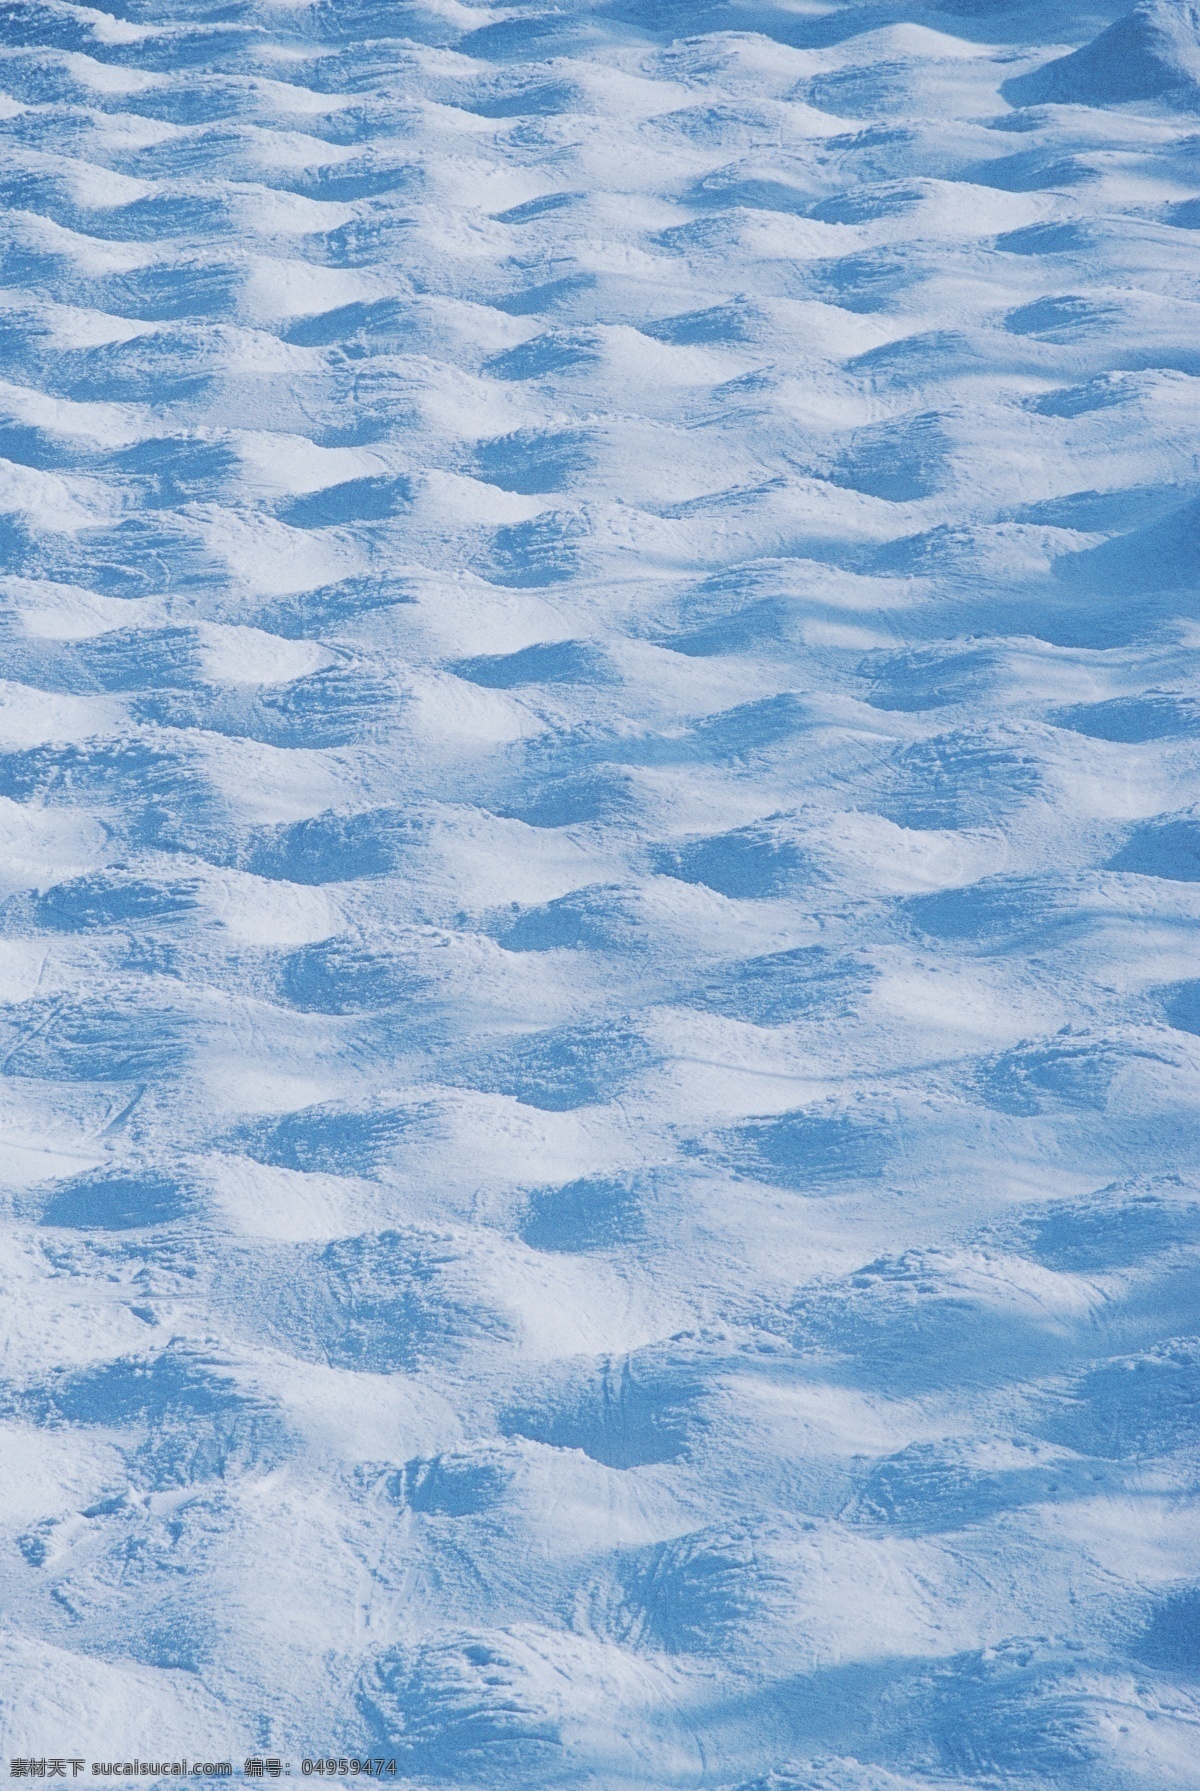 美丽 雪地 特写 高清 冬天 雪地运动 划雪运动 雪景 风景 摄影图片 高清图片 体育运动 生活百科 蓝色